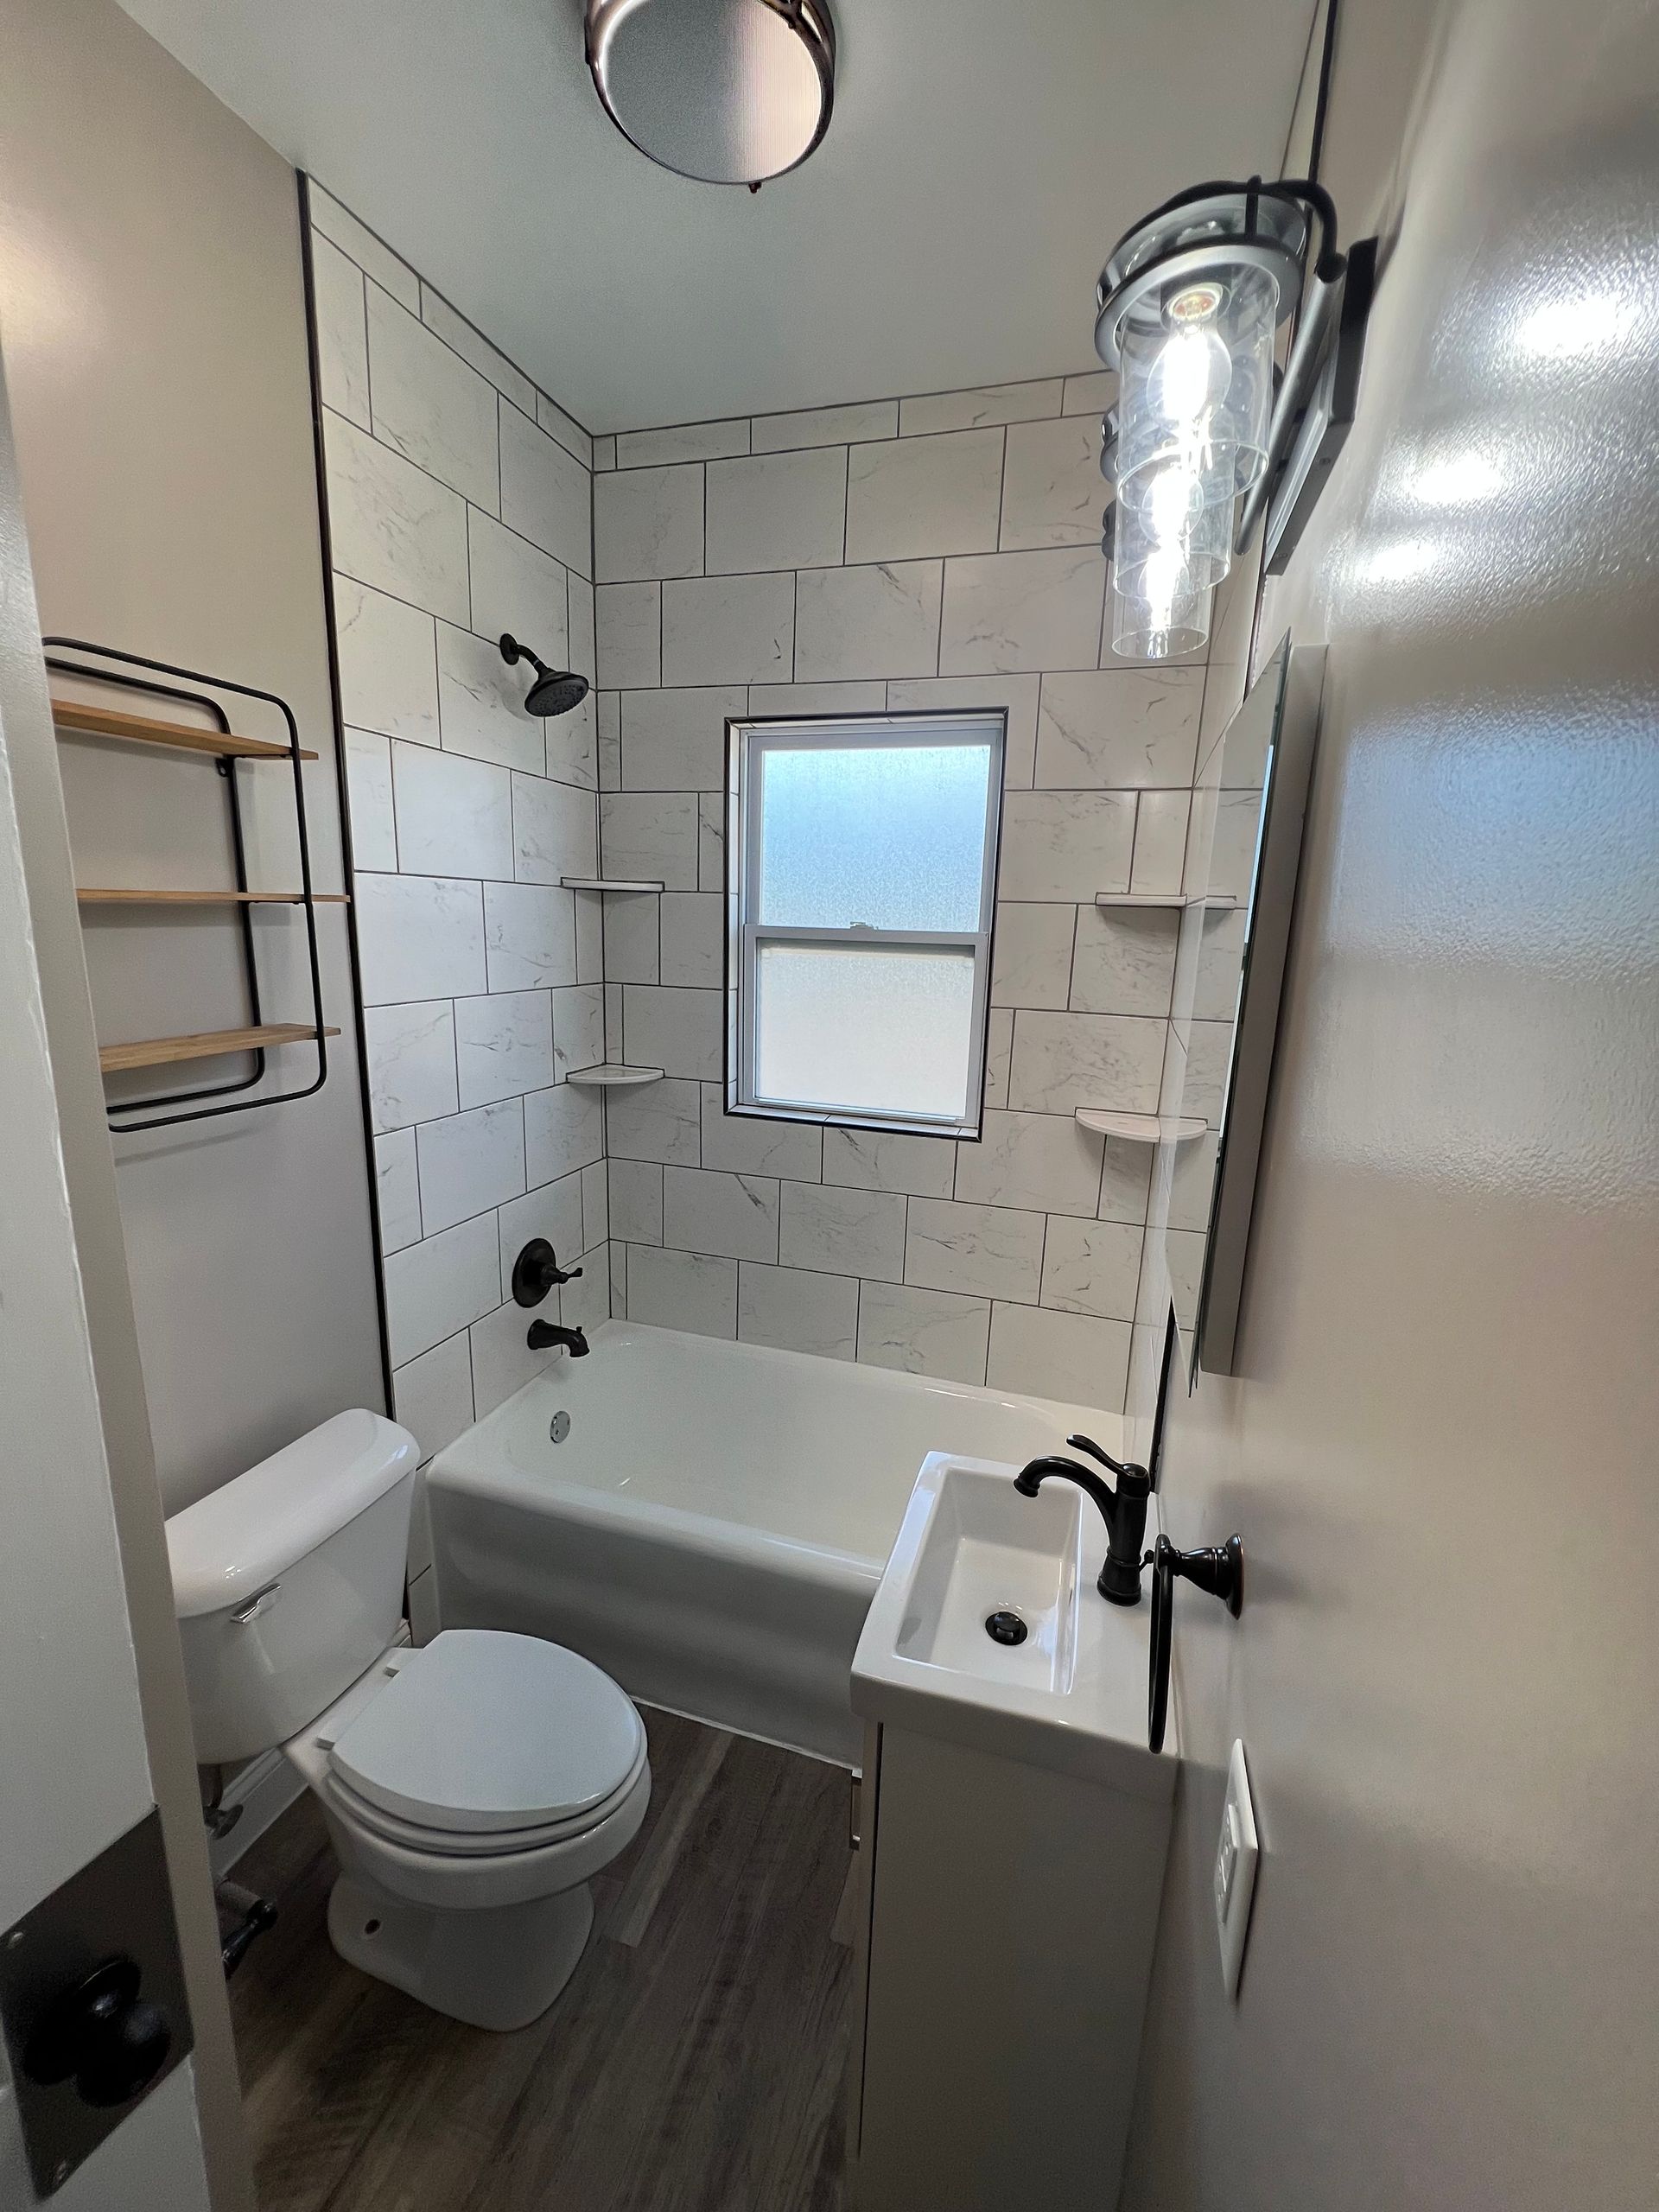 A bathroom with a toilet , sink , bathtub and window.